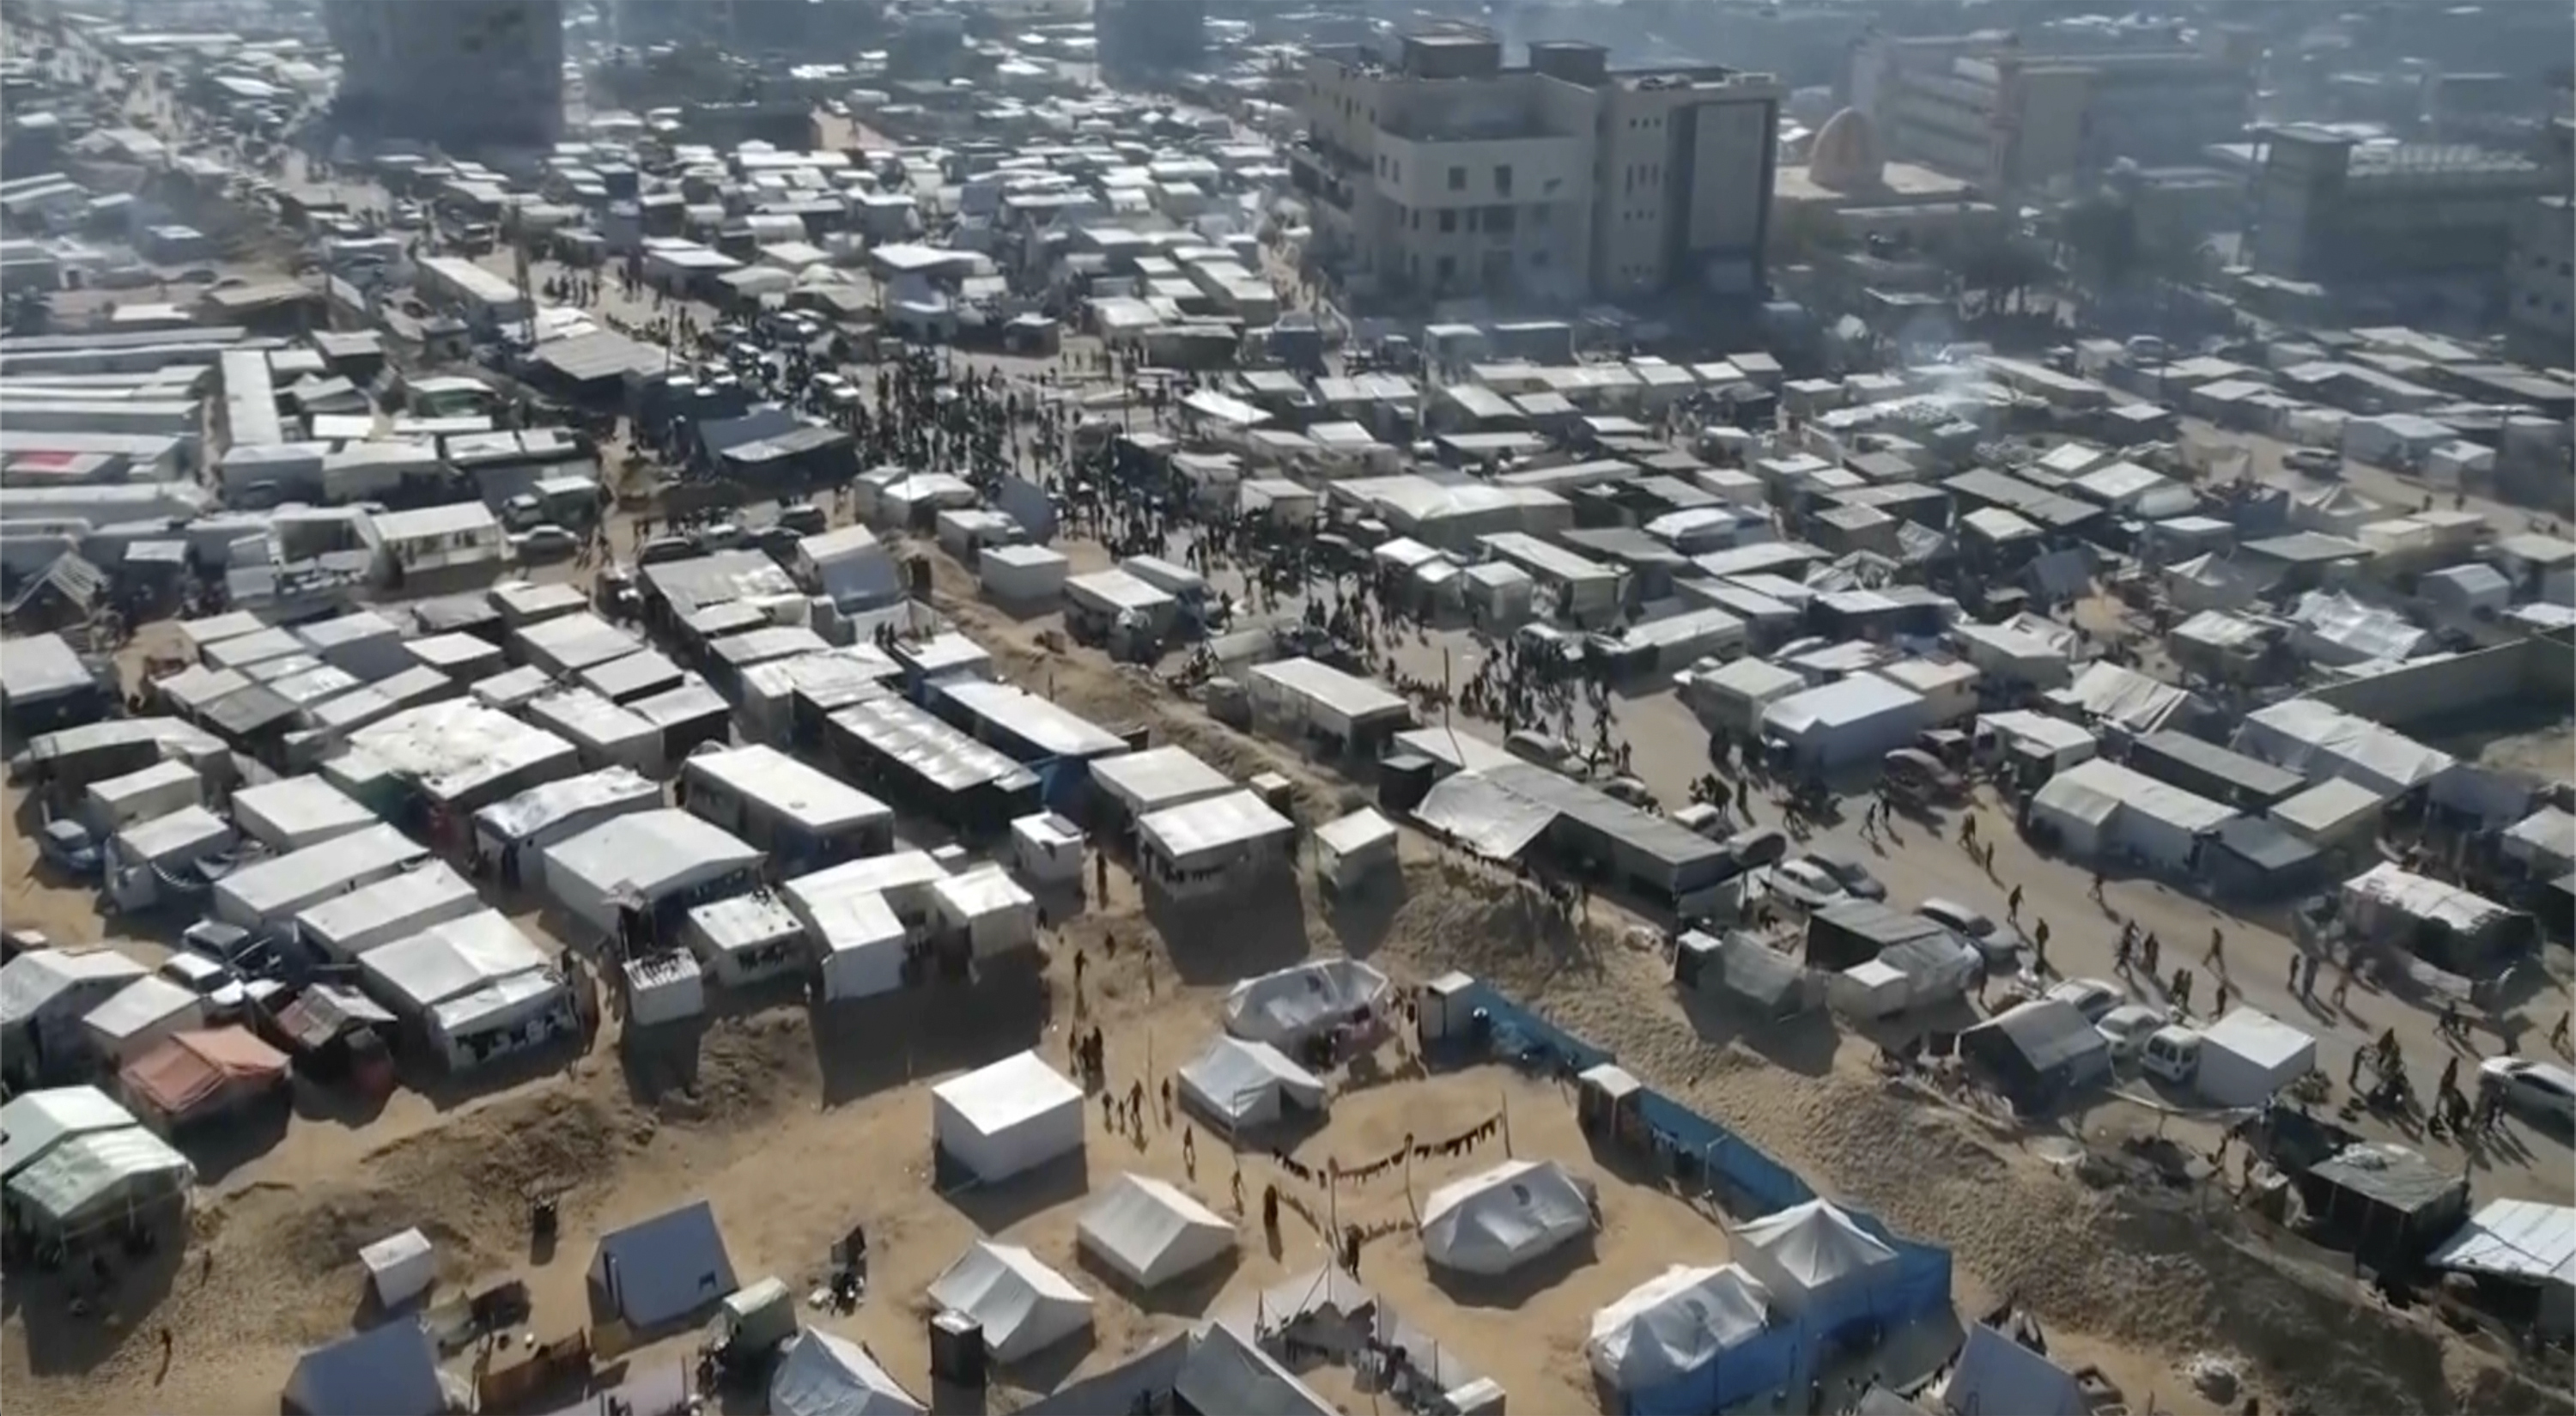 ڈرون تصویر، جنوبی غزہ کی پٹی میں بے گھر افراد کے زیر استعمال ہزاروں خیموں کو دکھاتی ہے۔